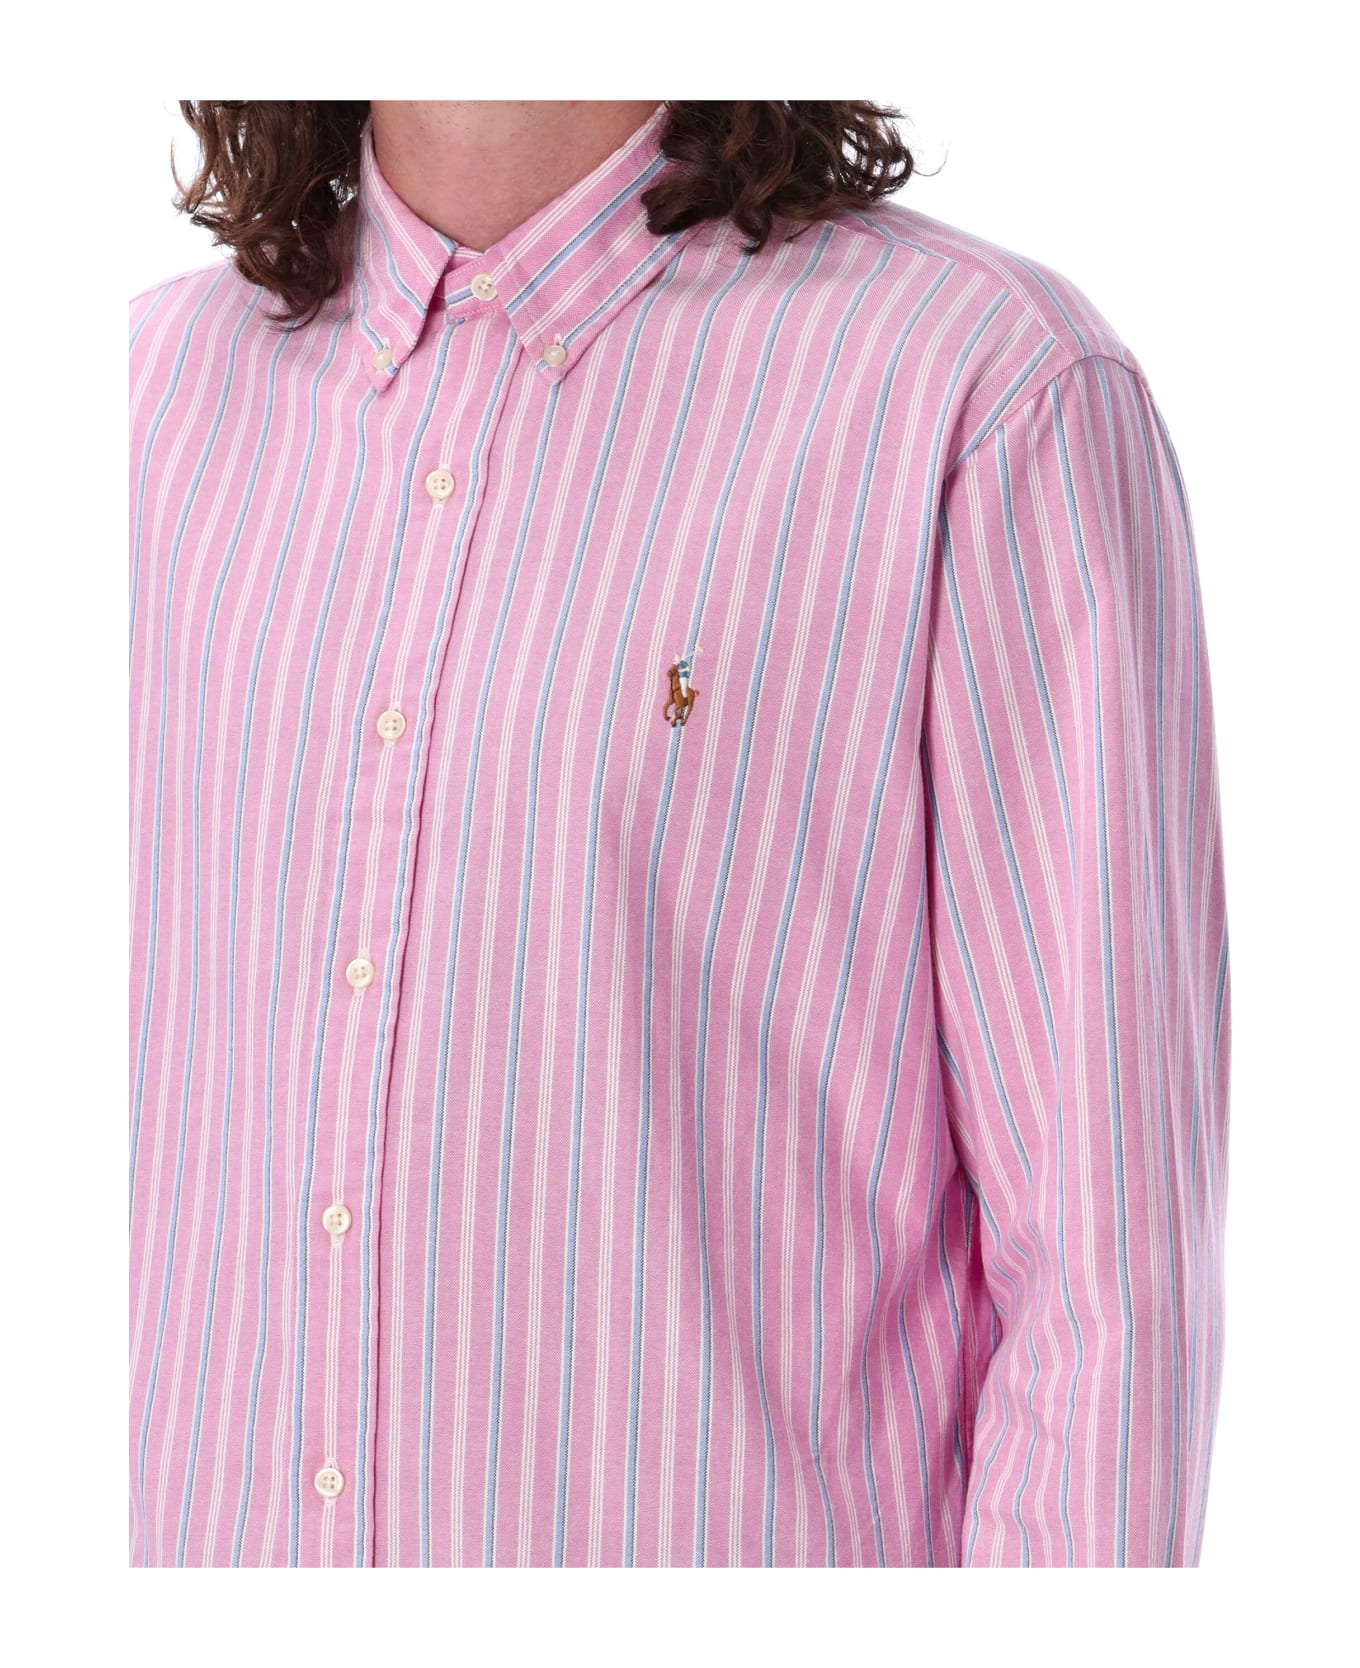 Polo Ralph Lauren Classic Custom Fit Shirt - PINK LIGHT BLU